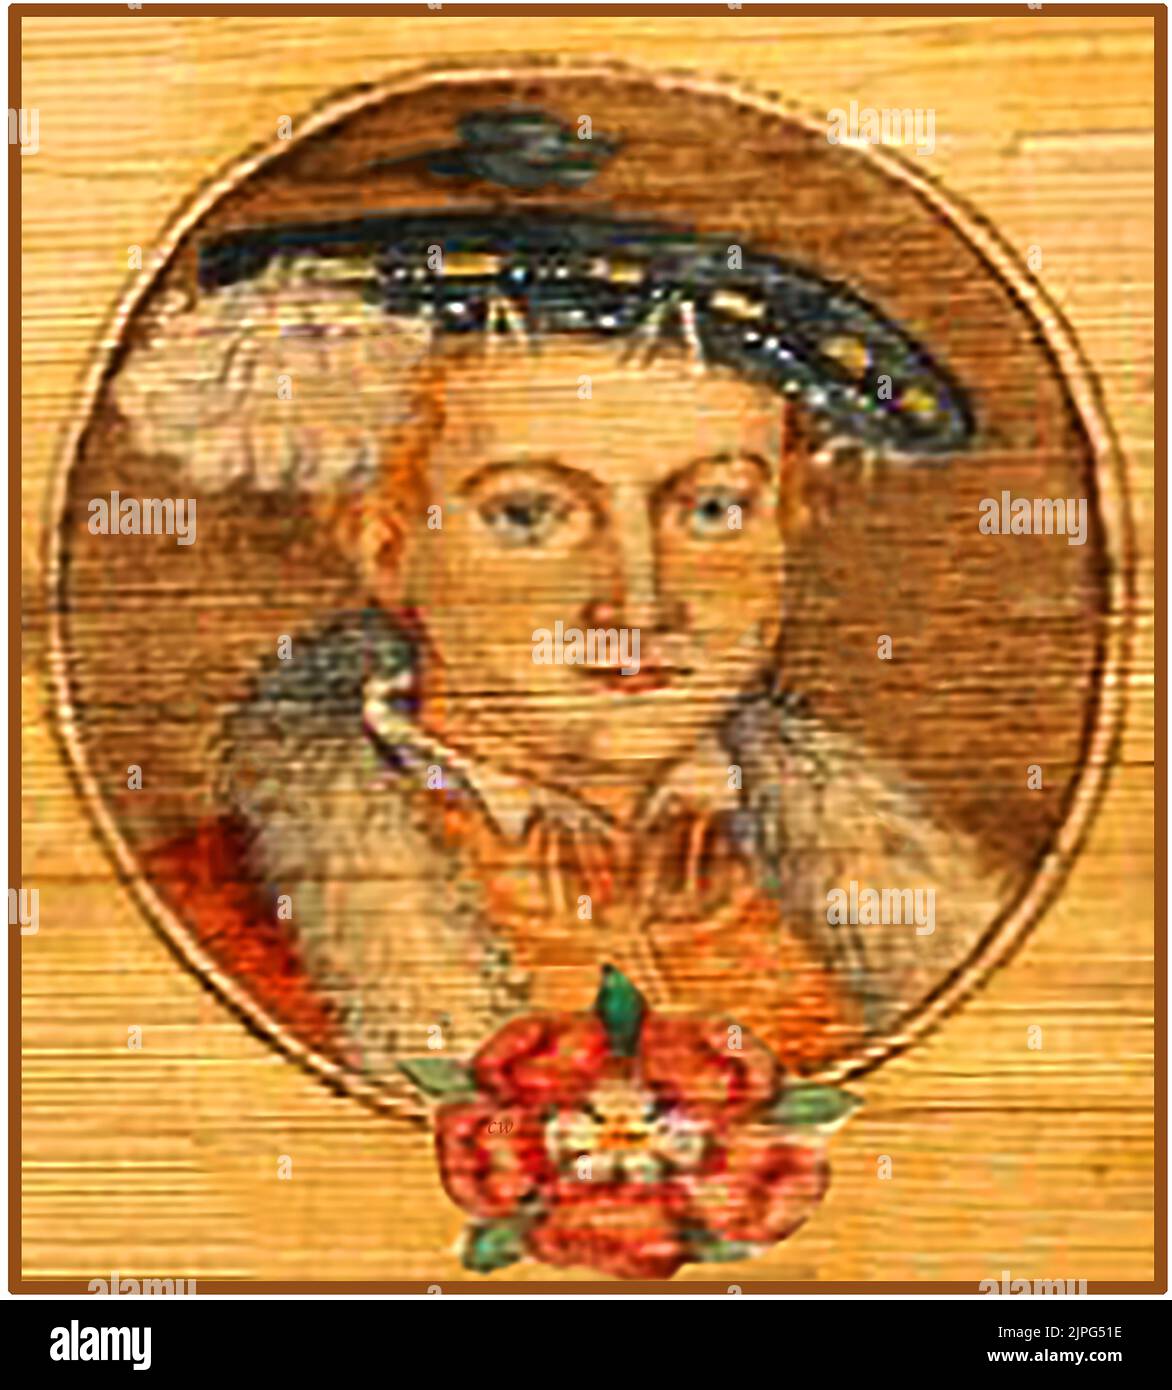 Am altkoloriertes Porträt des Königs Edward VI. Von England (1537 – 1553), der bei seiner Krönung erst 9 Jahre alt war. Er war der Sohn von Henry VIII und Jane Seymour und der erste englische Monarch, der im protestantischen Glauben aufgewachsen war. Nach seinem Tod wurde Lady Jane Grey zur Königin erklärt, aber sie wurde wegen Verrats nach nur 9 Tagen auf dem Thron hingerichtet, was von vielen als politische Hinrichtung angesehen wurde. Er starb im Alter von 15 Jahren und nannte Lady Jane Grey als seine Nachfolgerin. Stockfoto